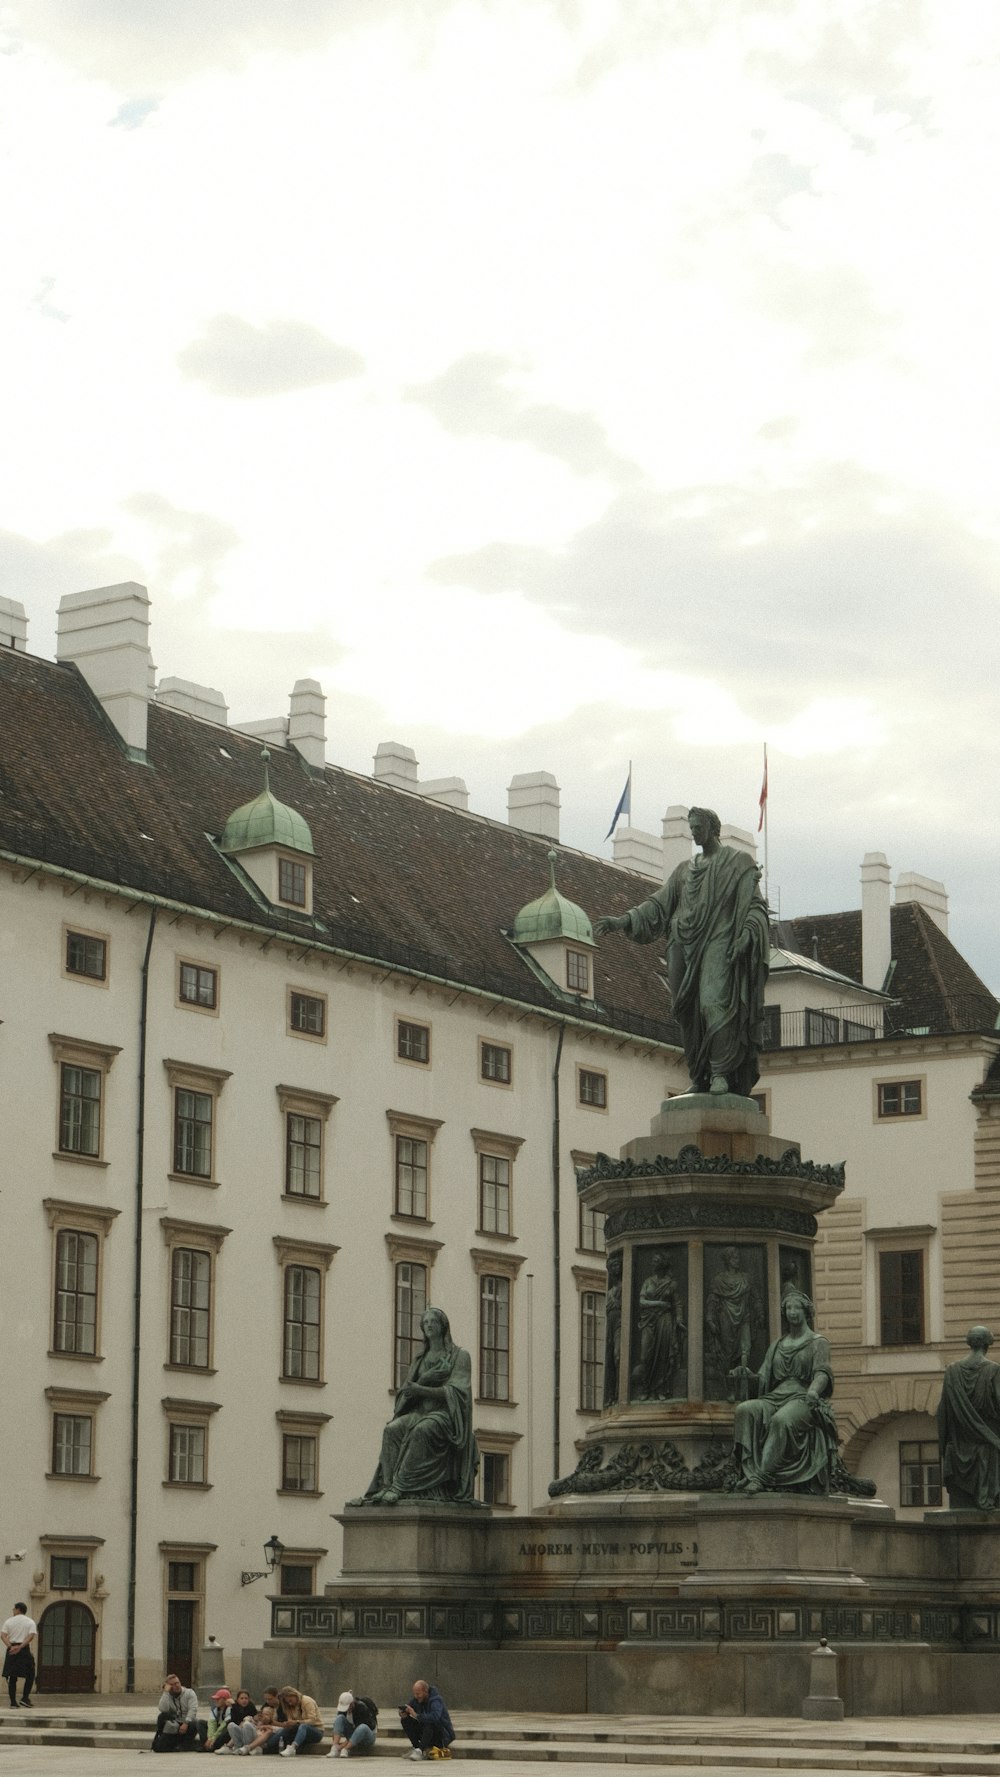 eine Statue vor einem Gebäude mit vielen Fenstern